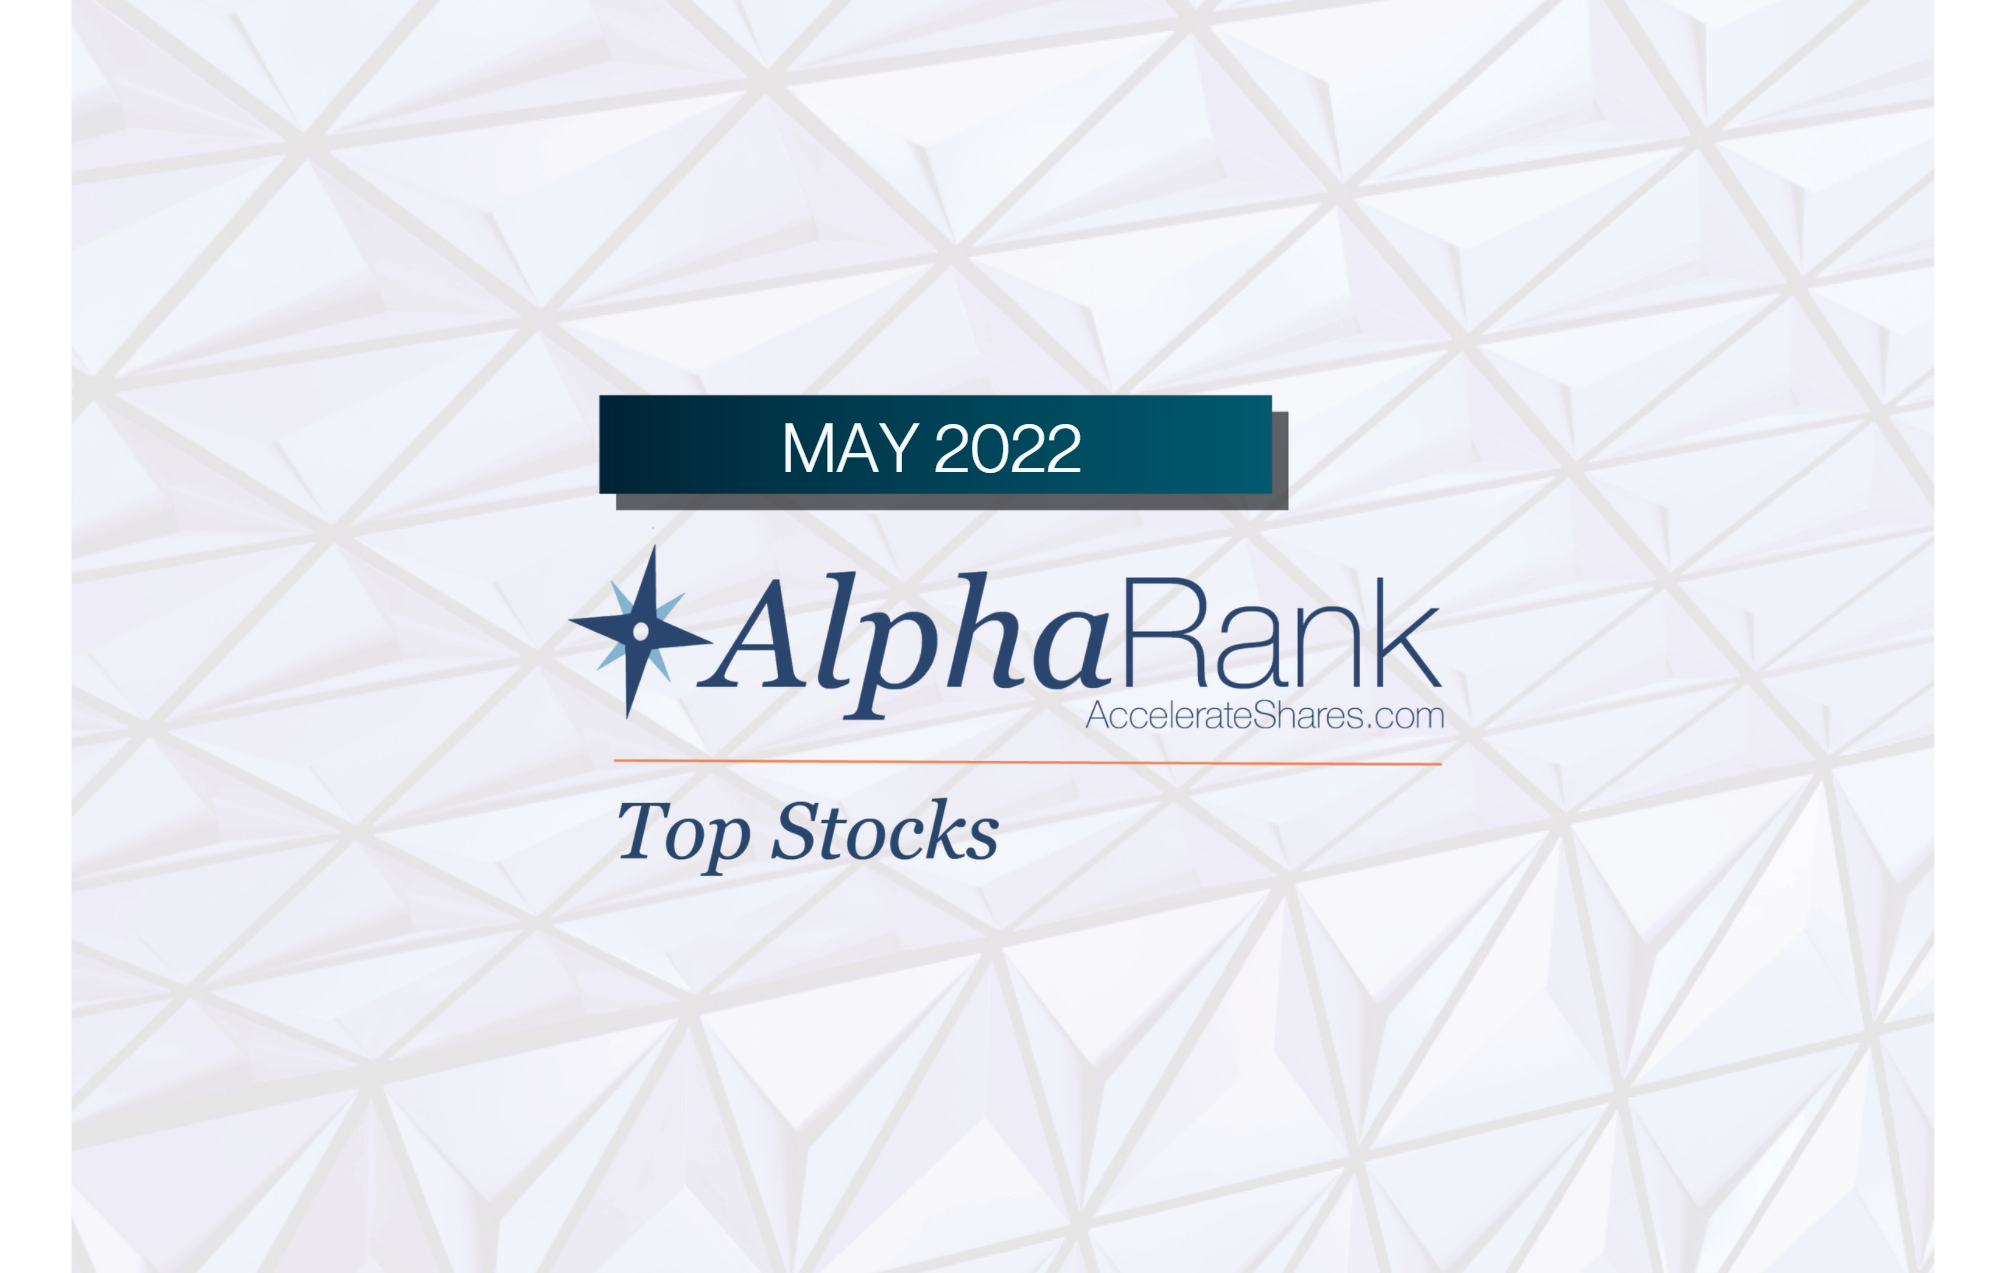 AlphaRank Top Stocks – May 2022